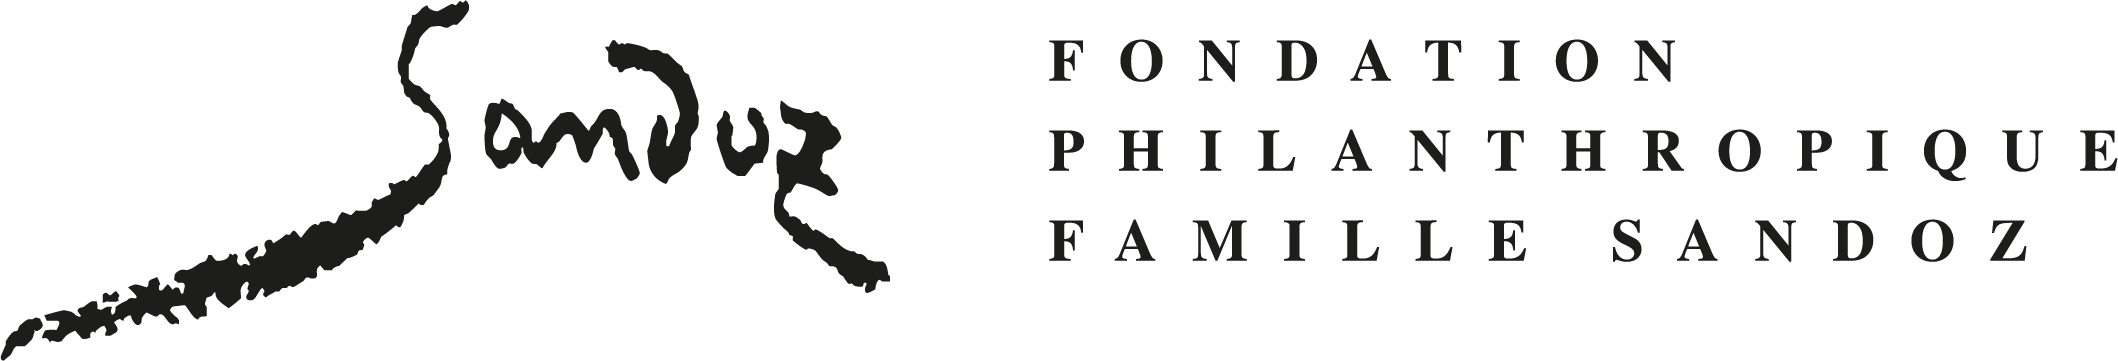 Fondation Philanthropique Famille Sandoz